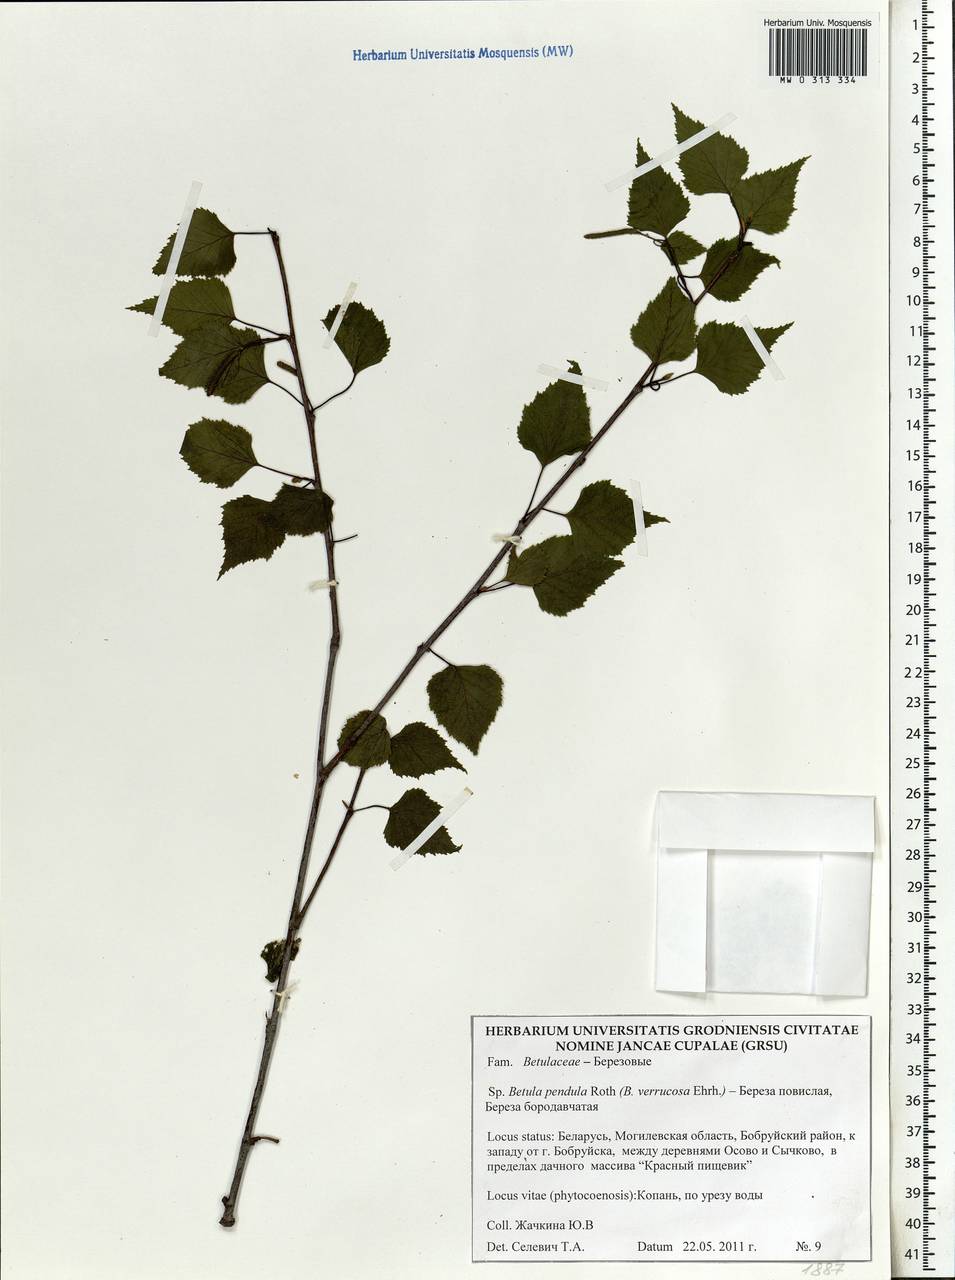 Betula pendula Roth, Eastern Europe, Belarus (E3a) (Belarus)